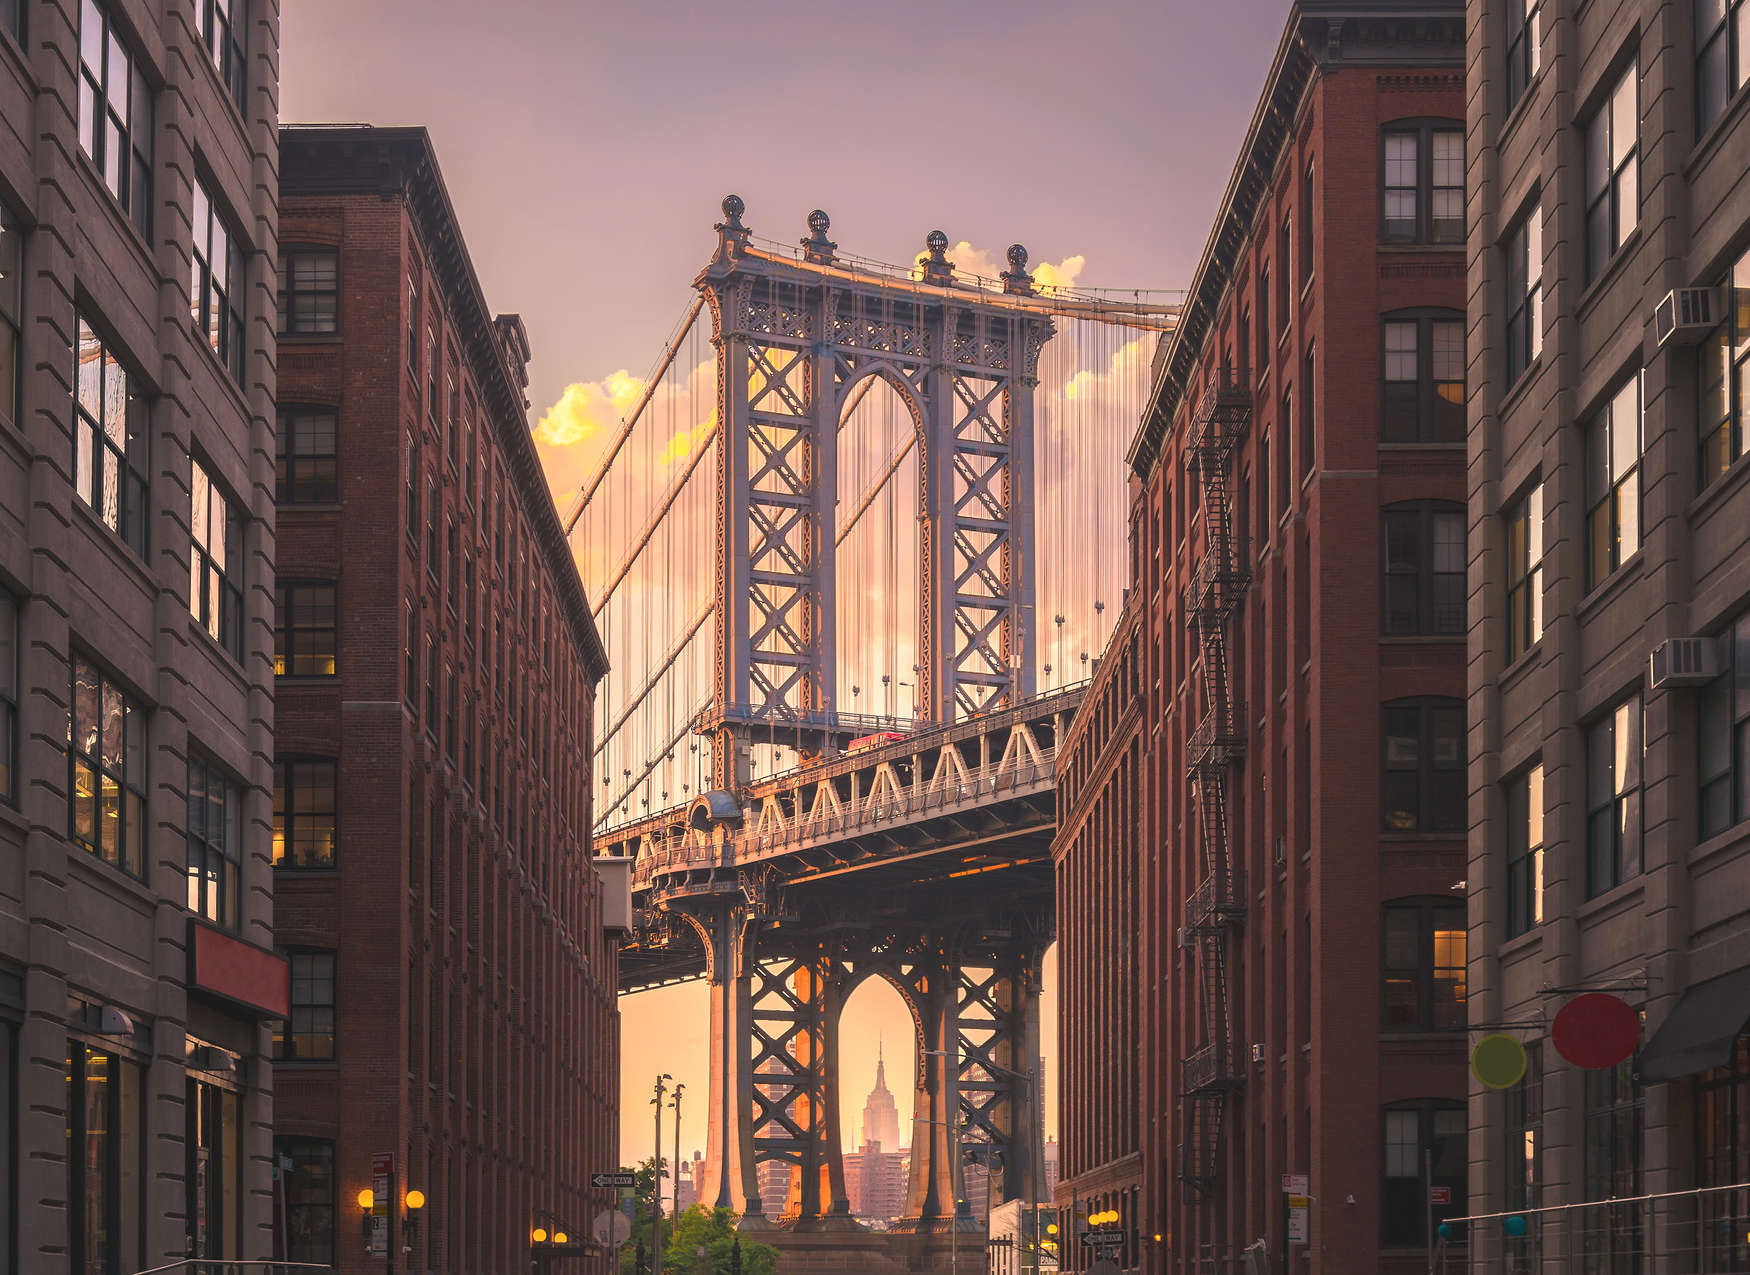             Brooklyn Bridge aus Straßenansicht – Braun, Grau
        